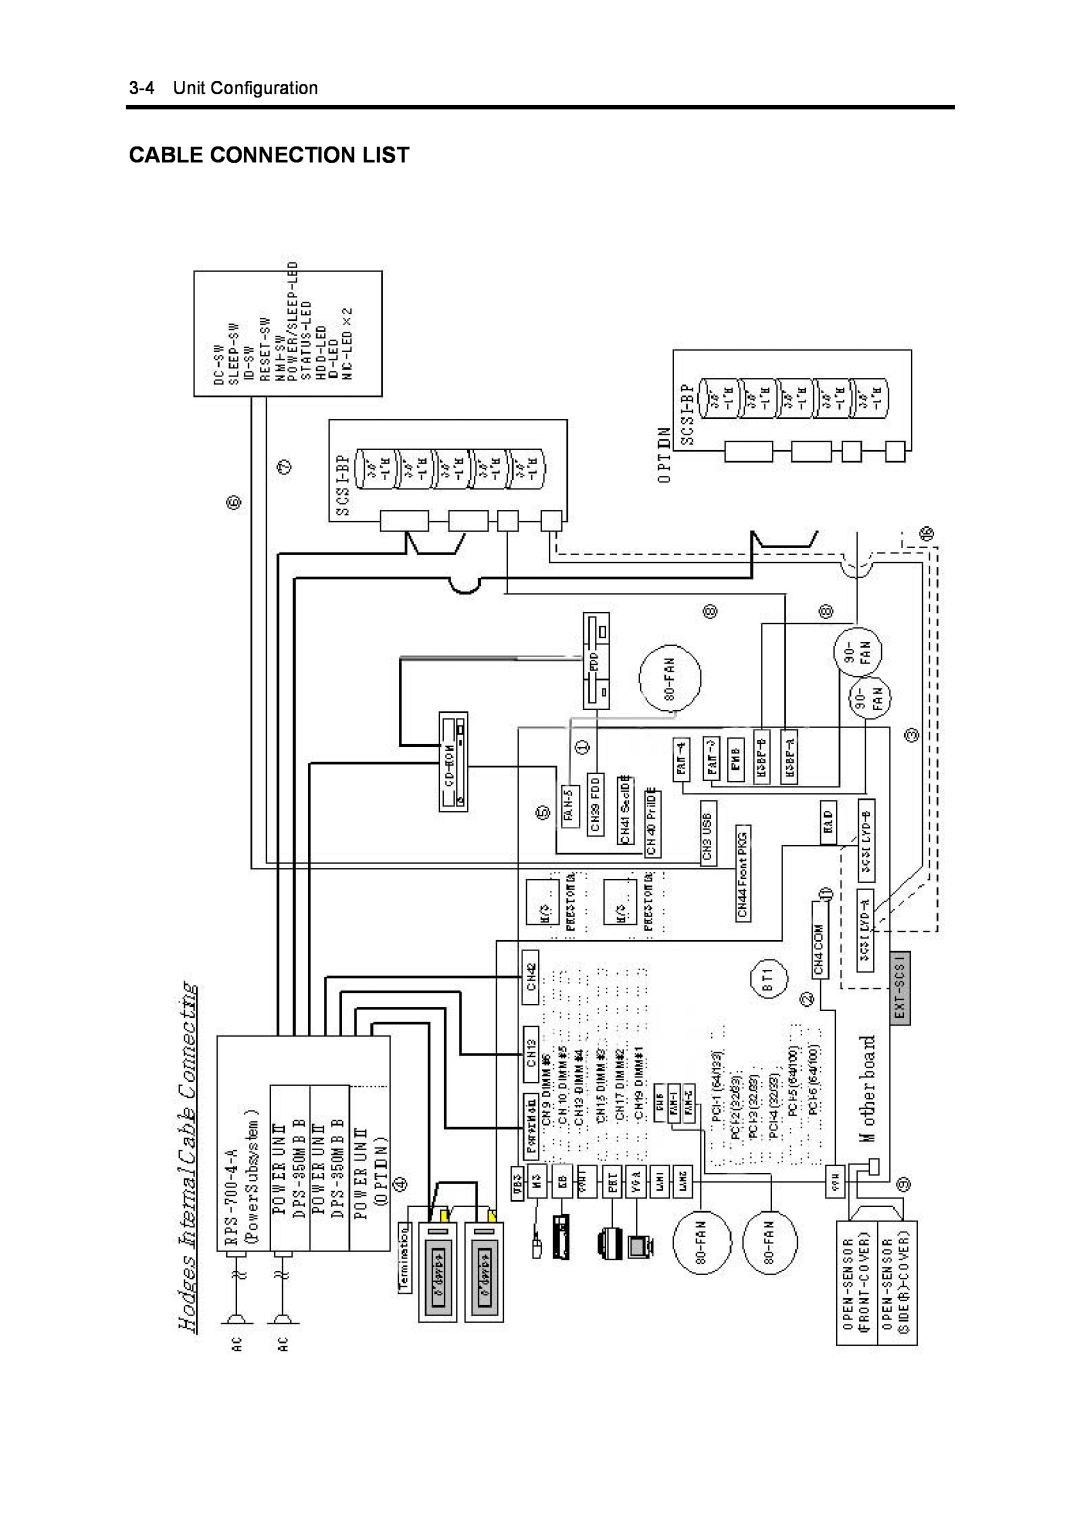 NEC 5800, 120Mf manual Cable Connection List, Unit Configuration 